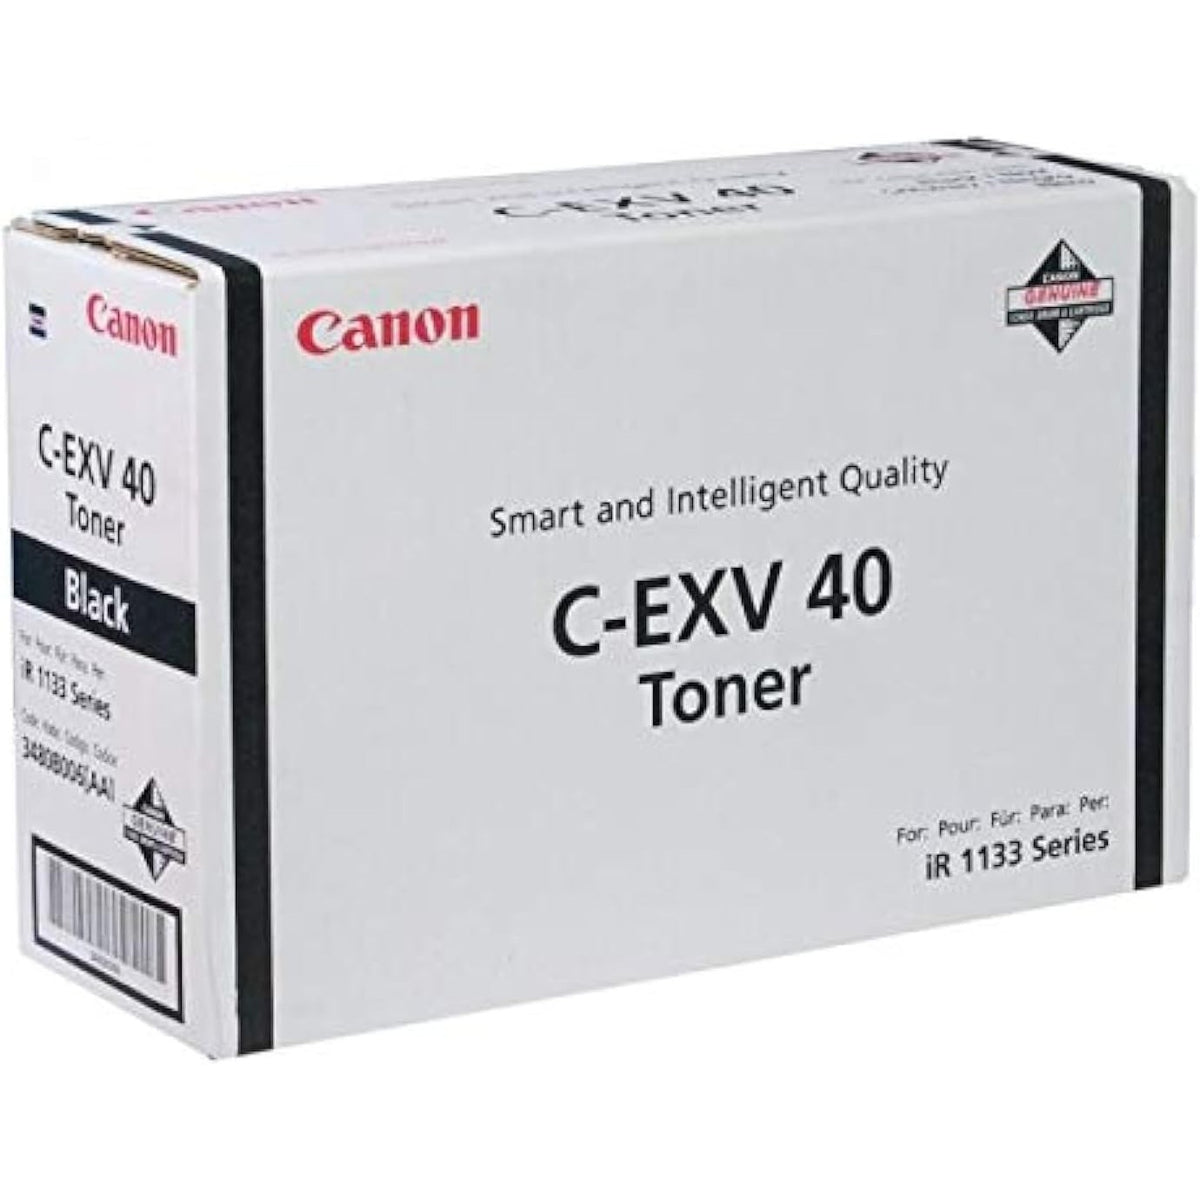 Canon irl 133 C-EXV-40 cartridge